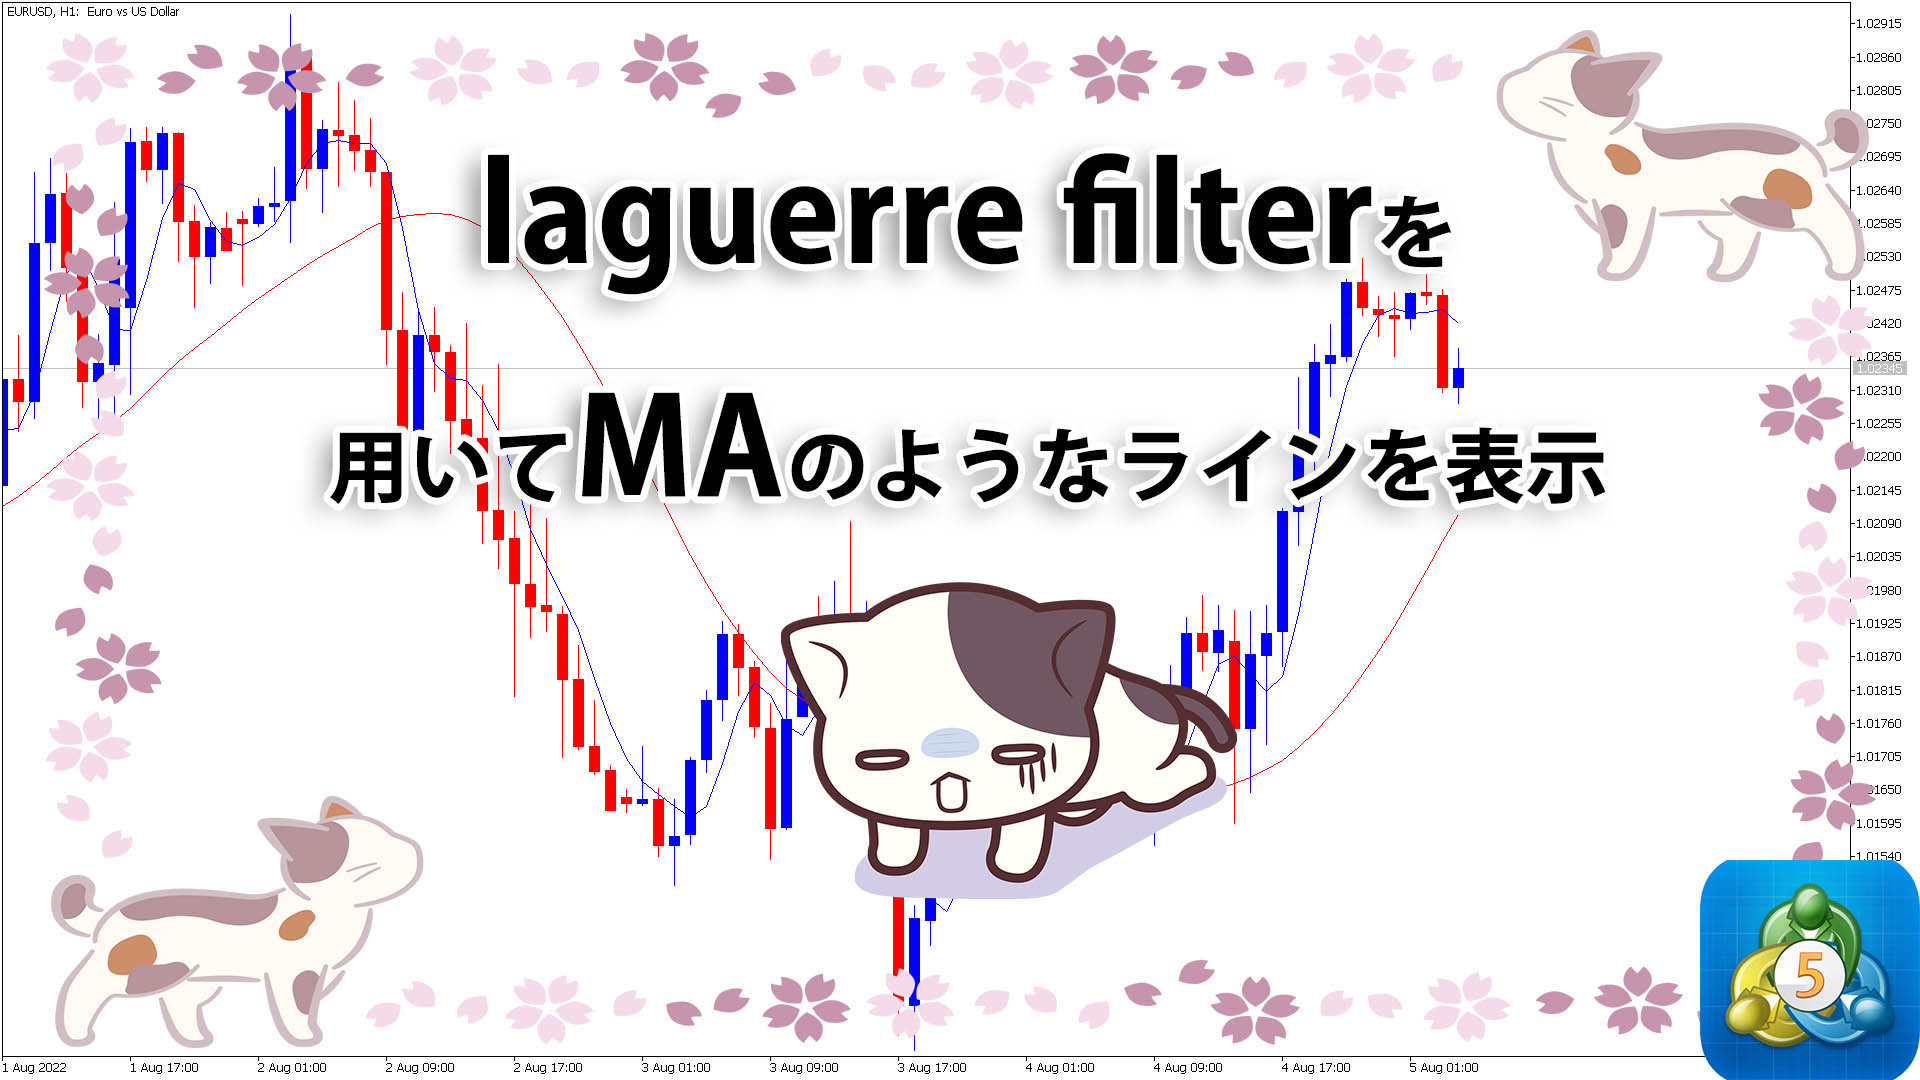 laguerre filterで移動平均線のようなラインを表示するMT5インジケーター「laguerrefilter」